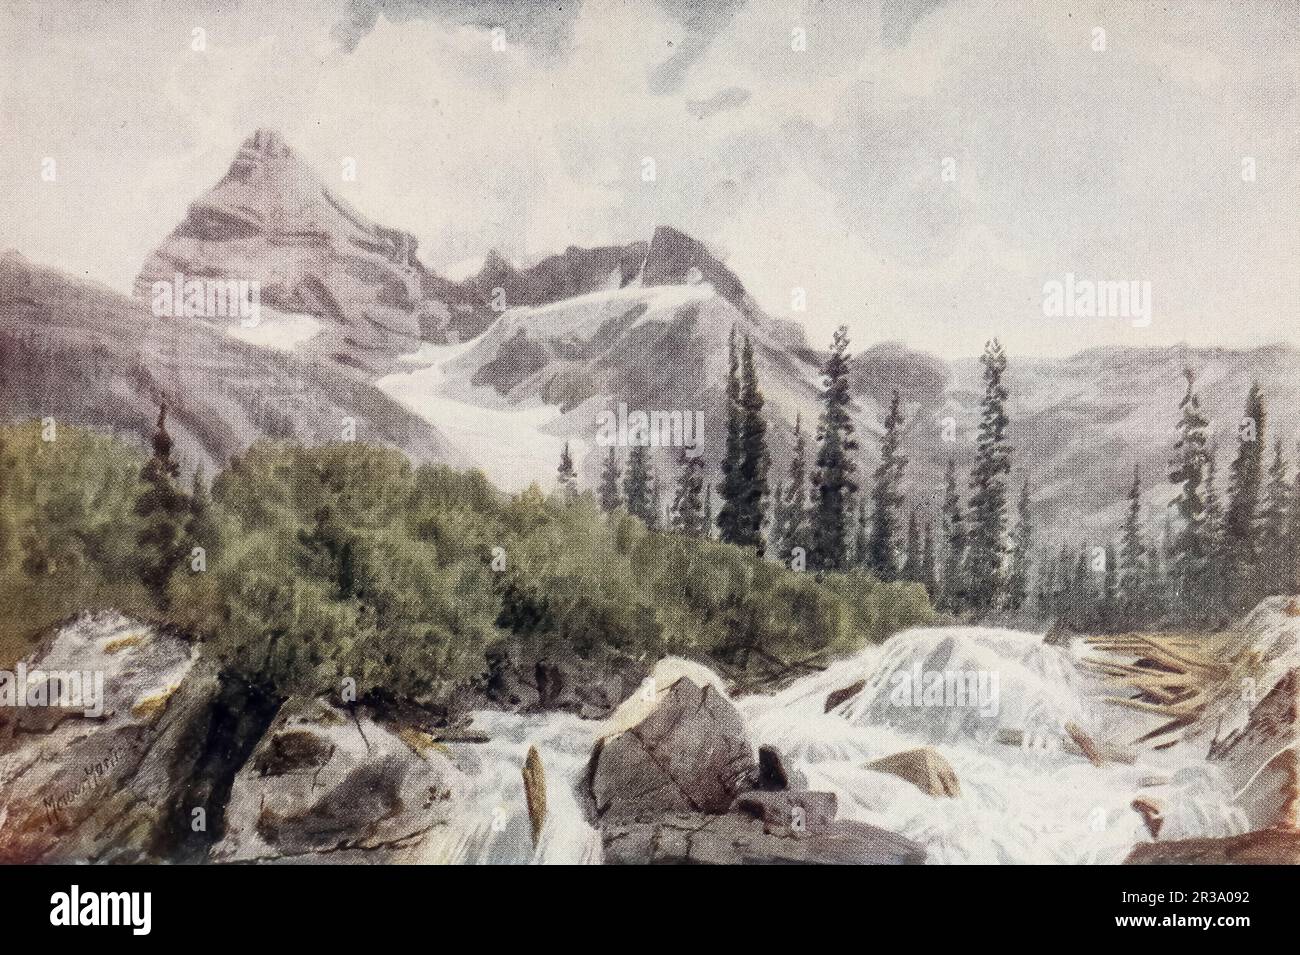 Mount Sir Donald, in The Selkirks British Columbia Watercolor von Thomas Mower Martin aus dem Buch " Canada " von Wilfred Campbell, veröffentlicht 1907 von Adam und Charles Black in London Stockfoto